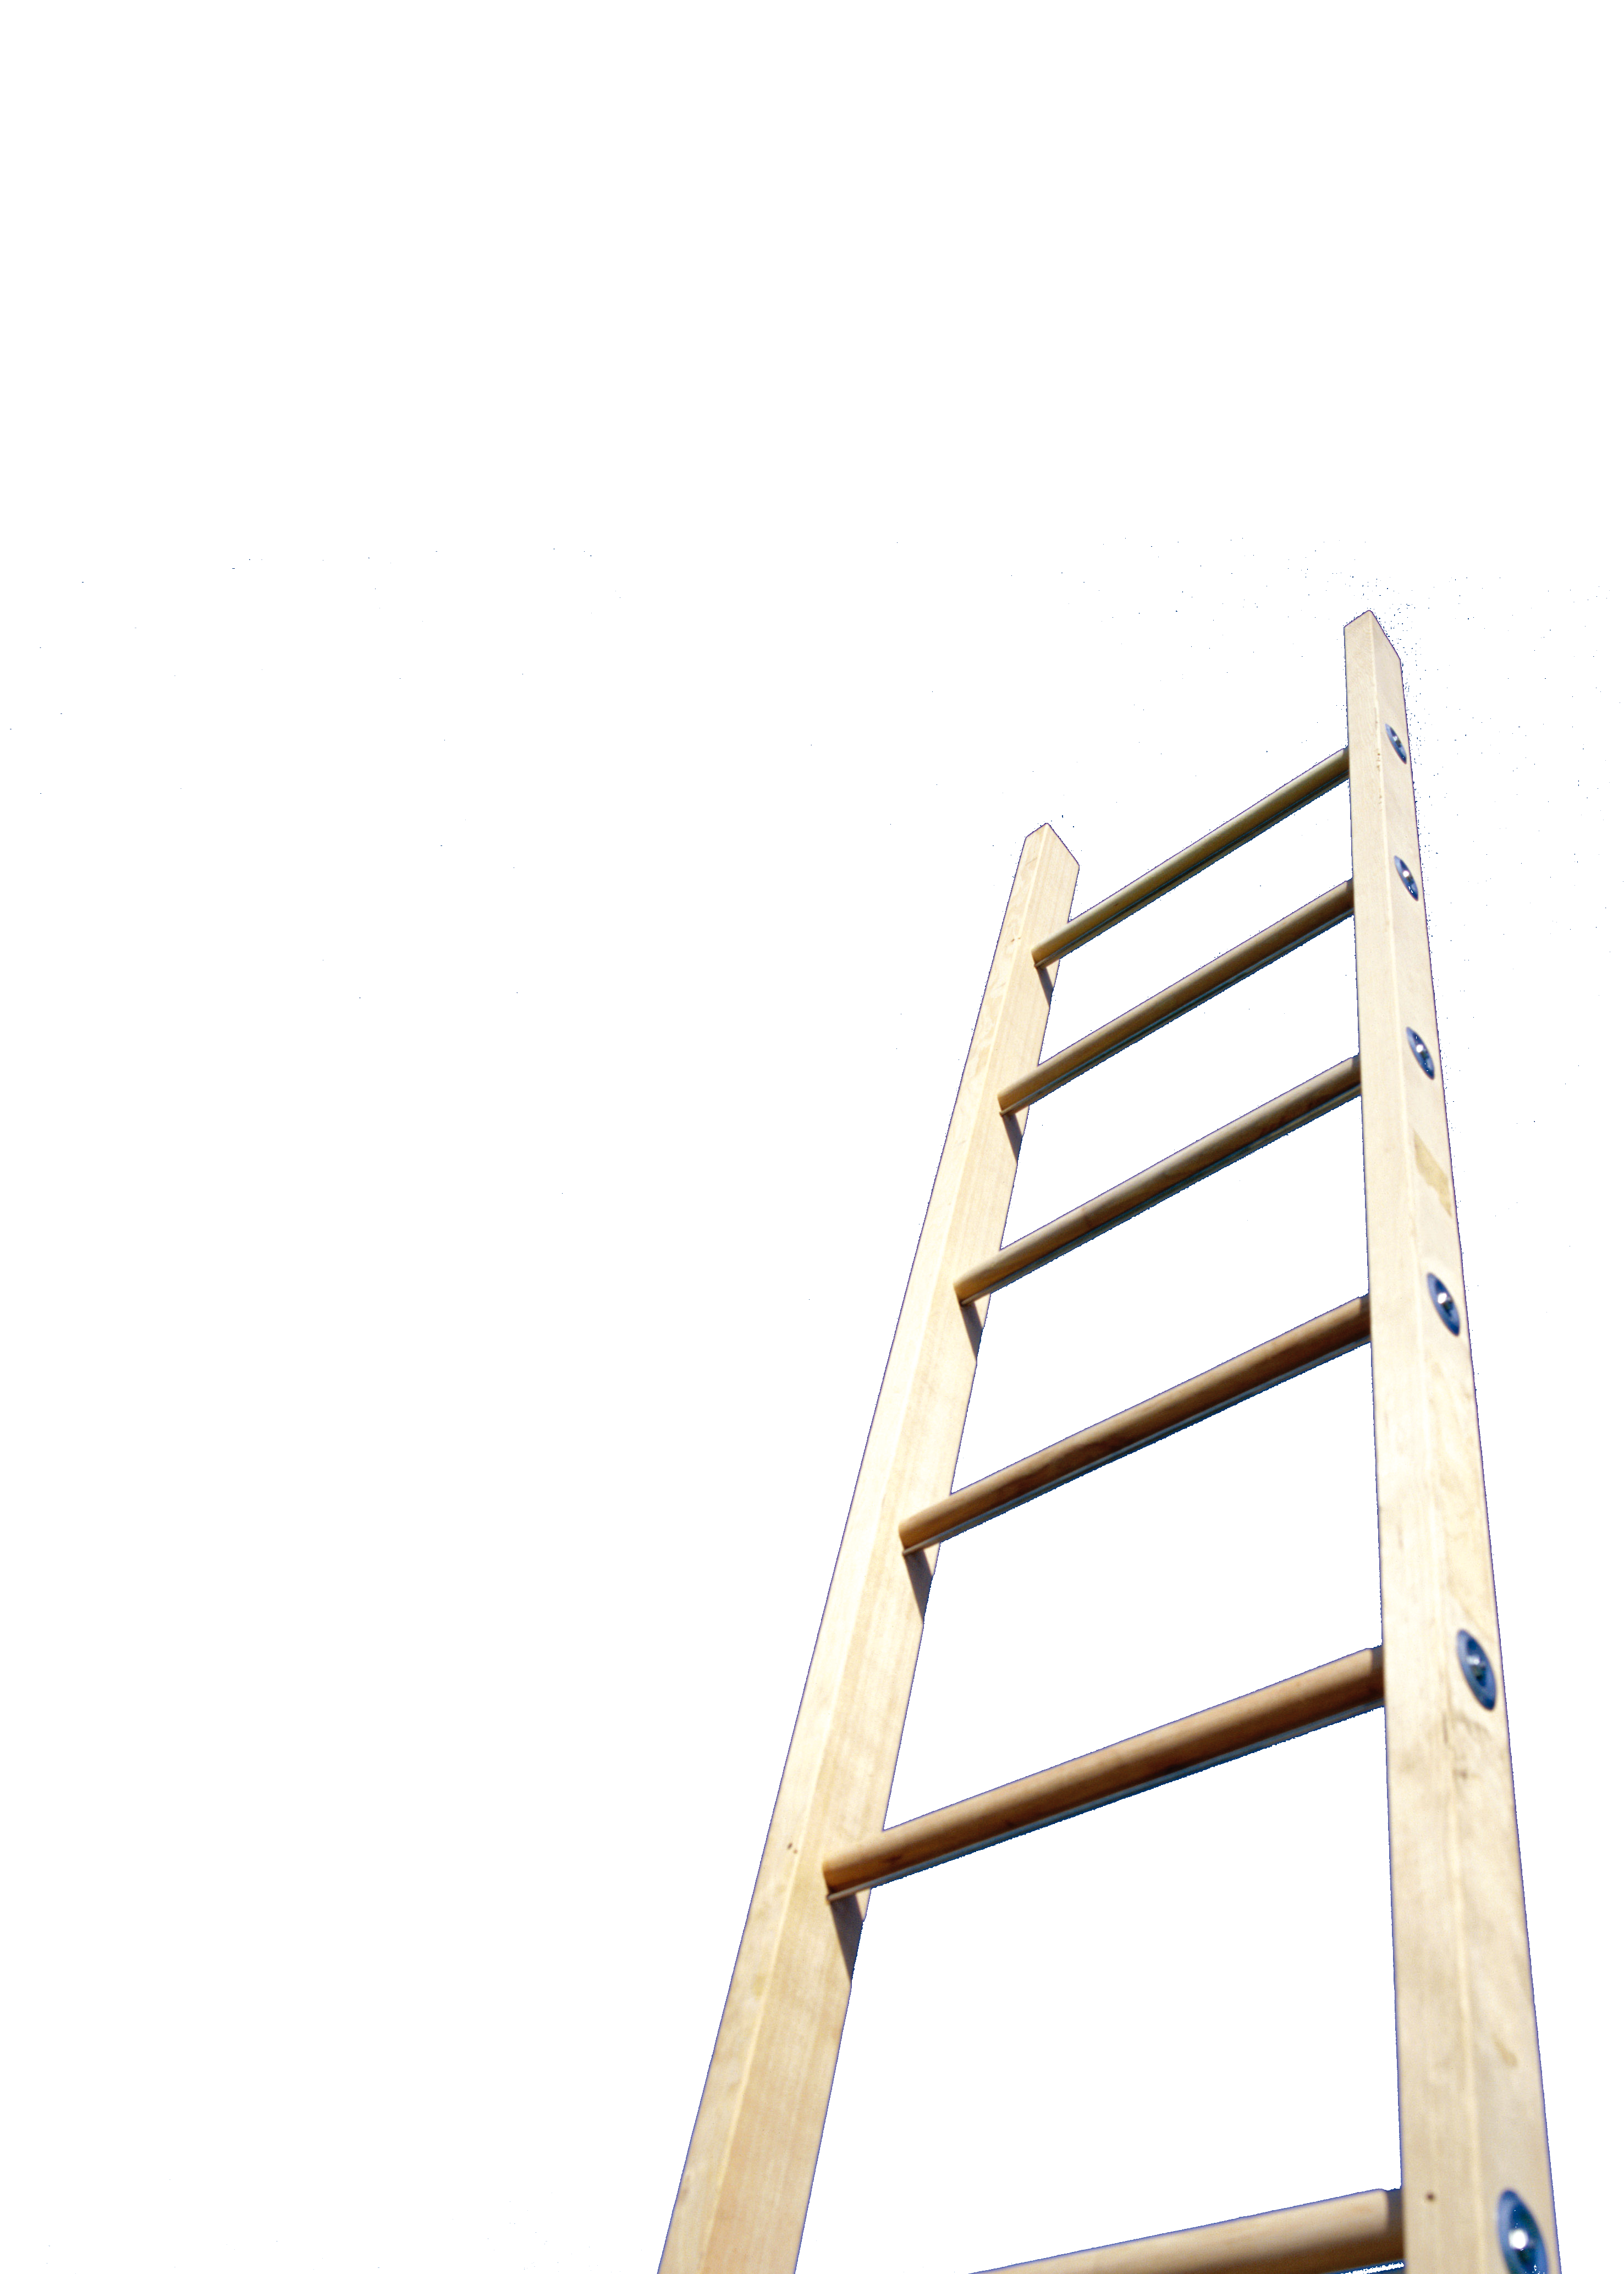 ladder clipart orange